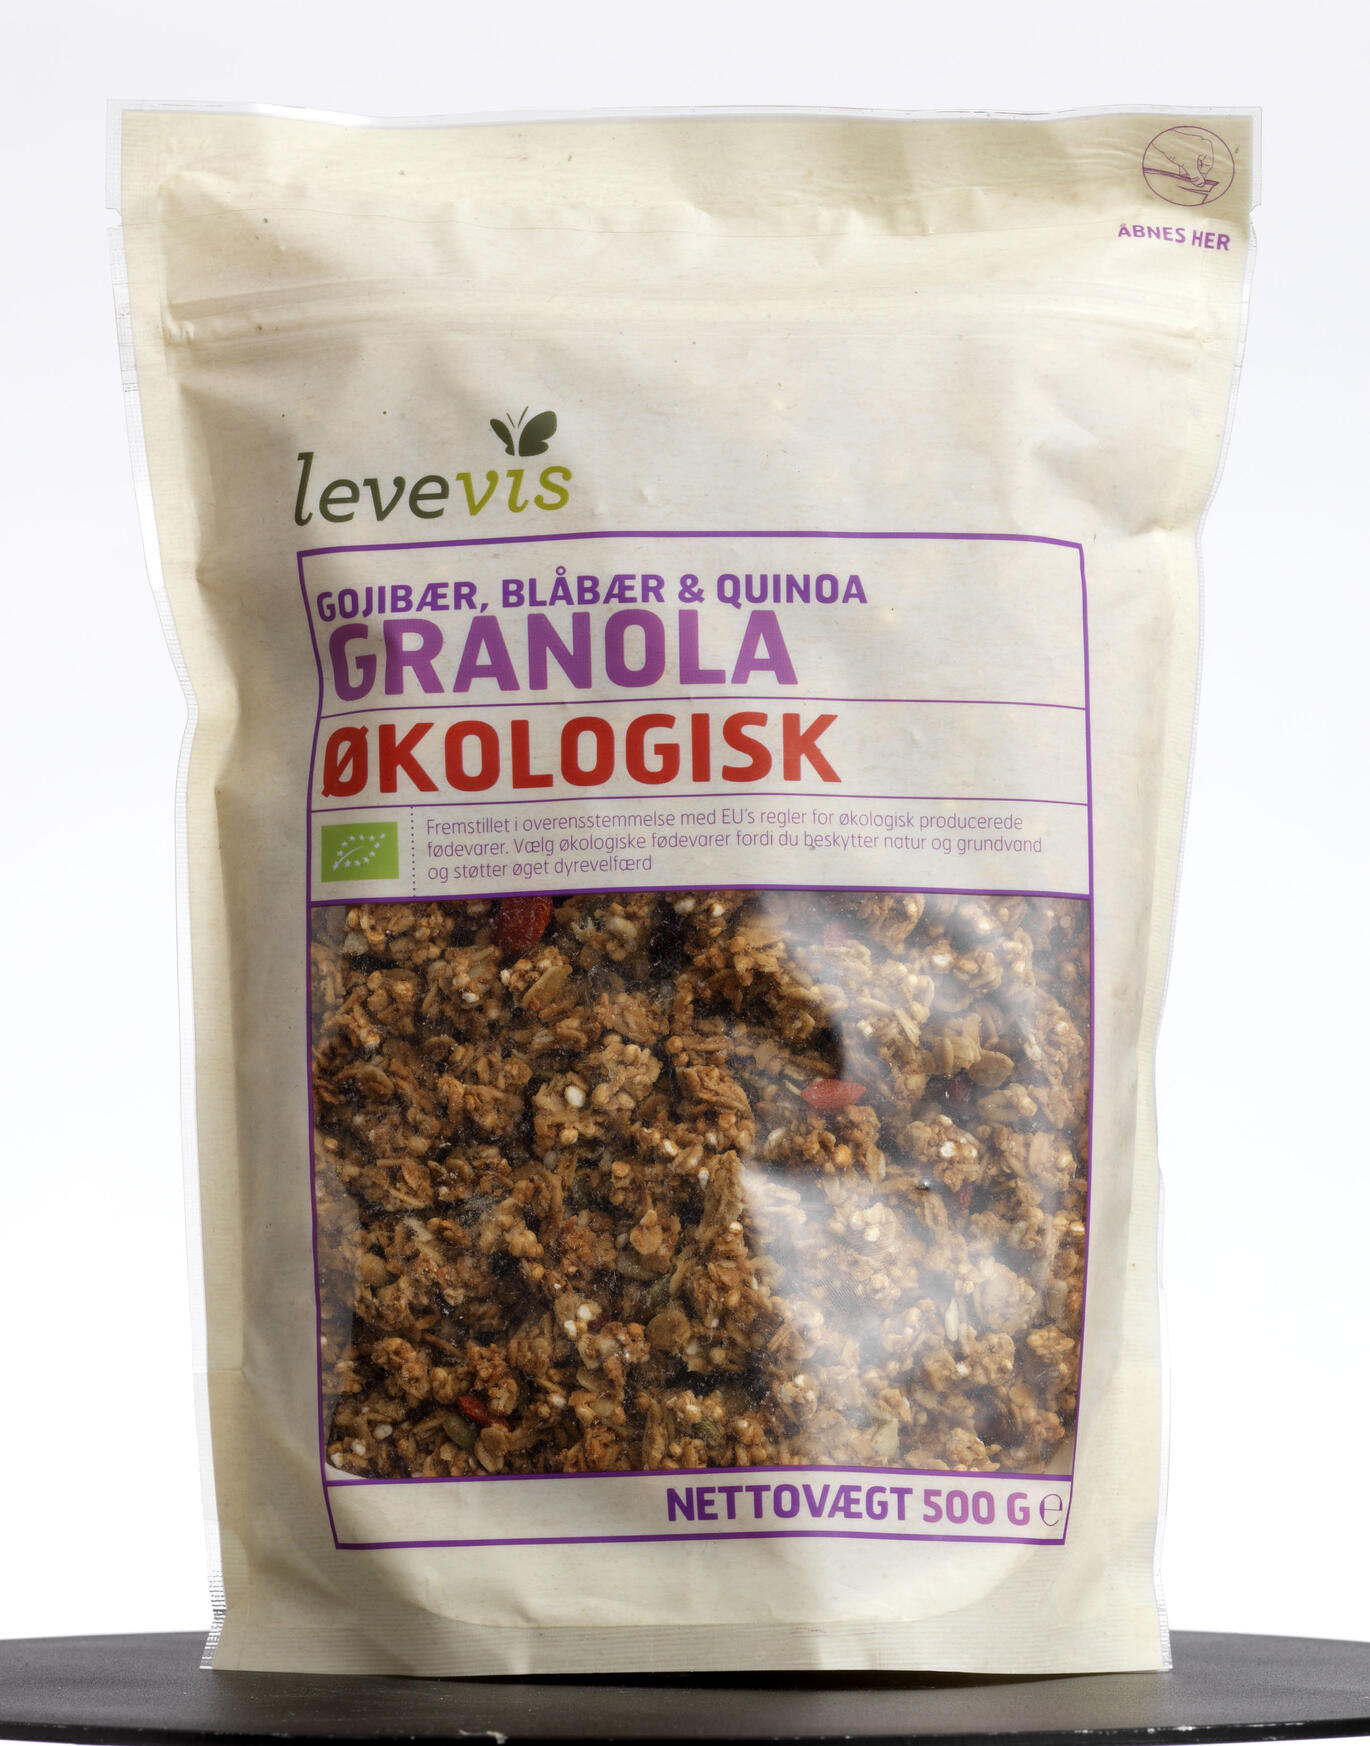 Gojibær, blåbær & quinoa granola Levevis